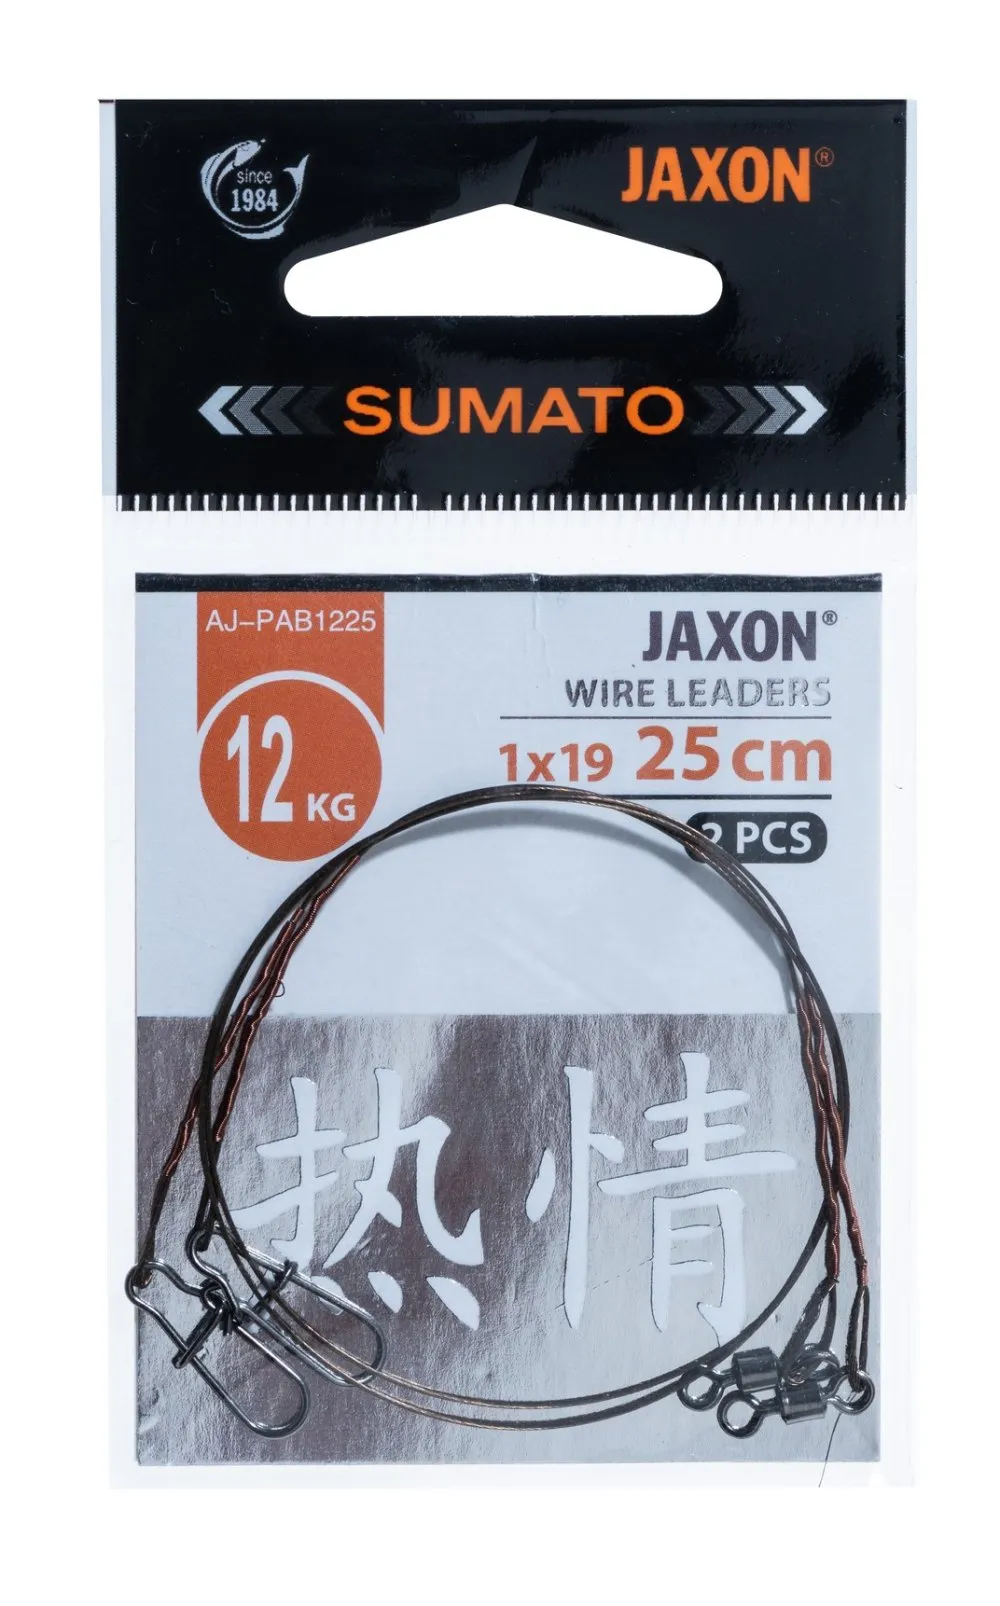 JAXON SUMATO WIRE LEADERS 12kg 25cm